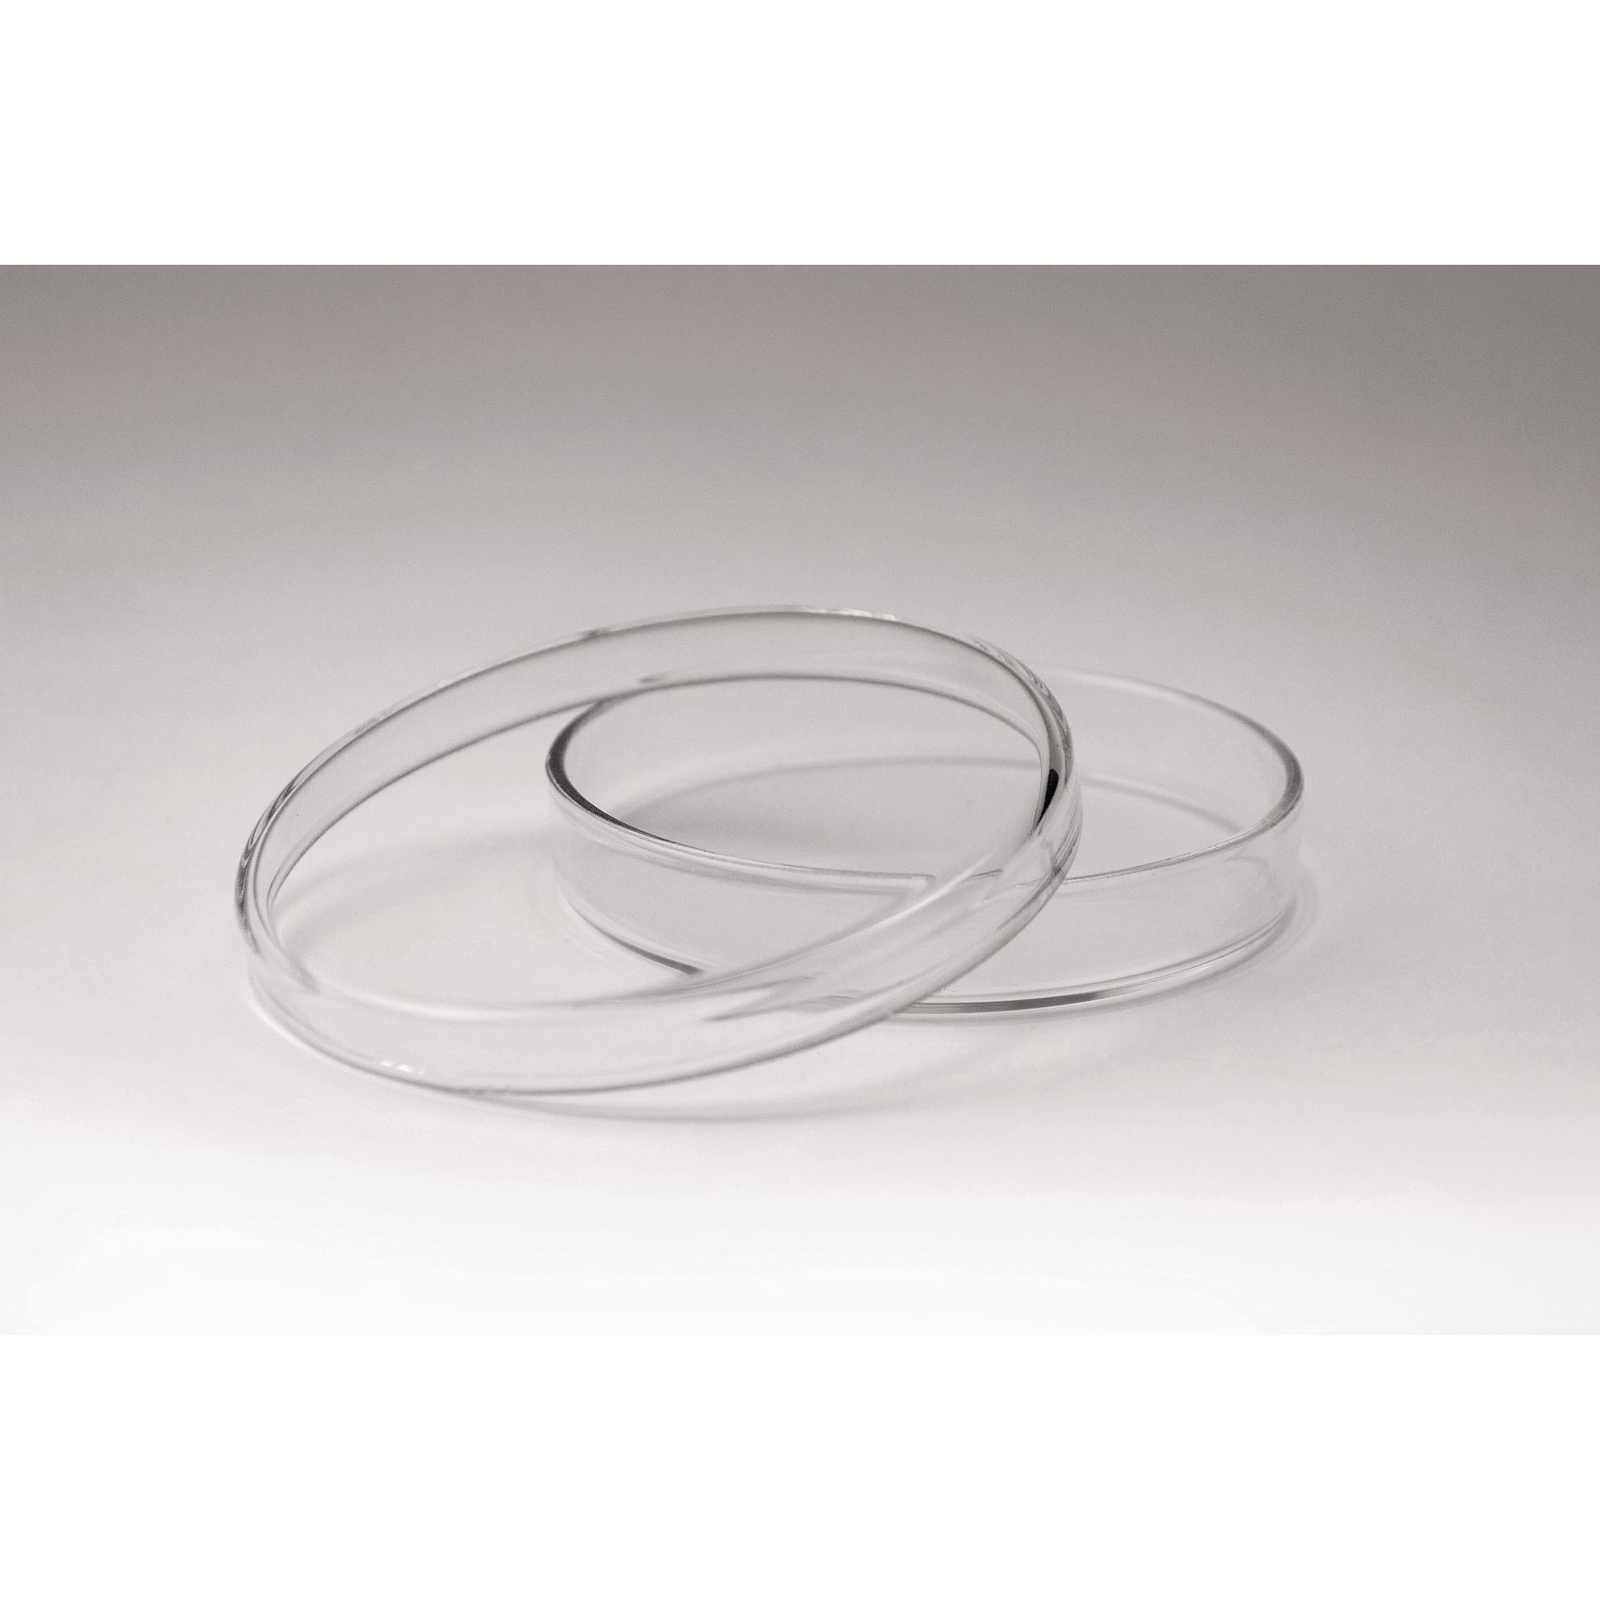 Glass Petri Dishes - 90mm x 15mm